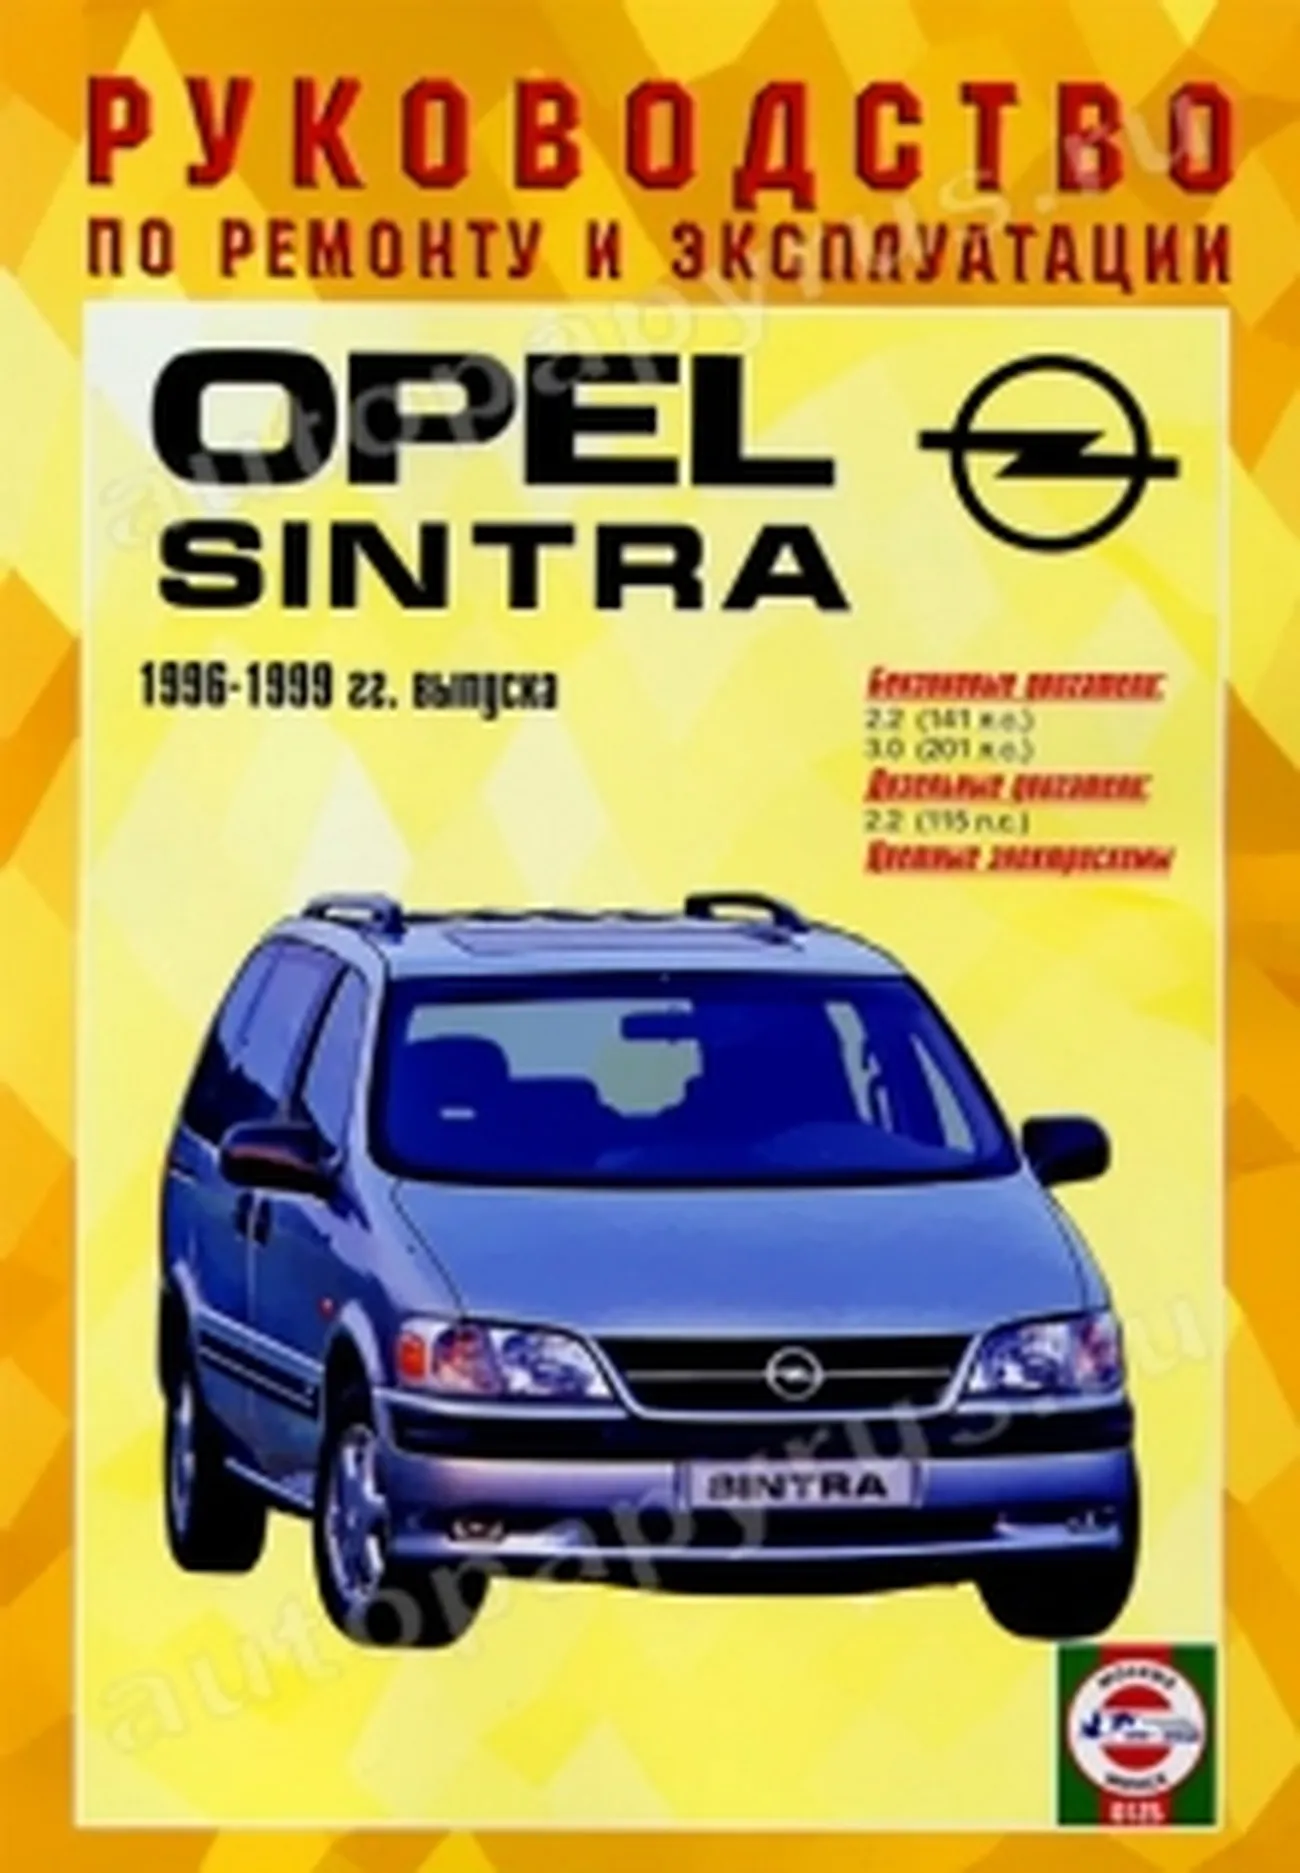 Книга: OPEL SINTRA (б , д) 1996 | 1999 г.в., рем., экспл., то | Чижовка